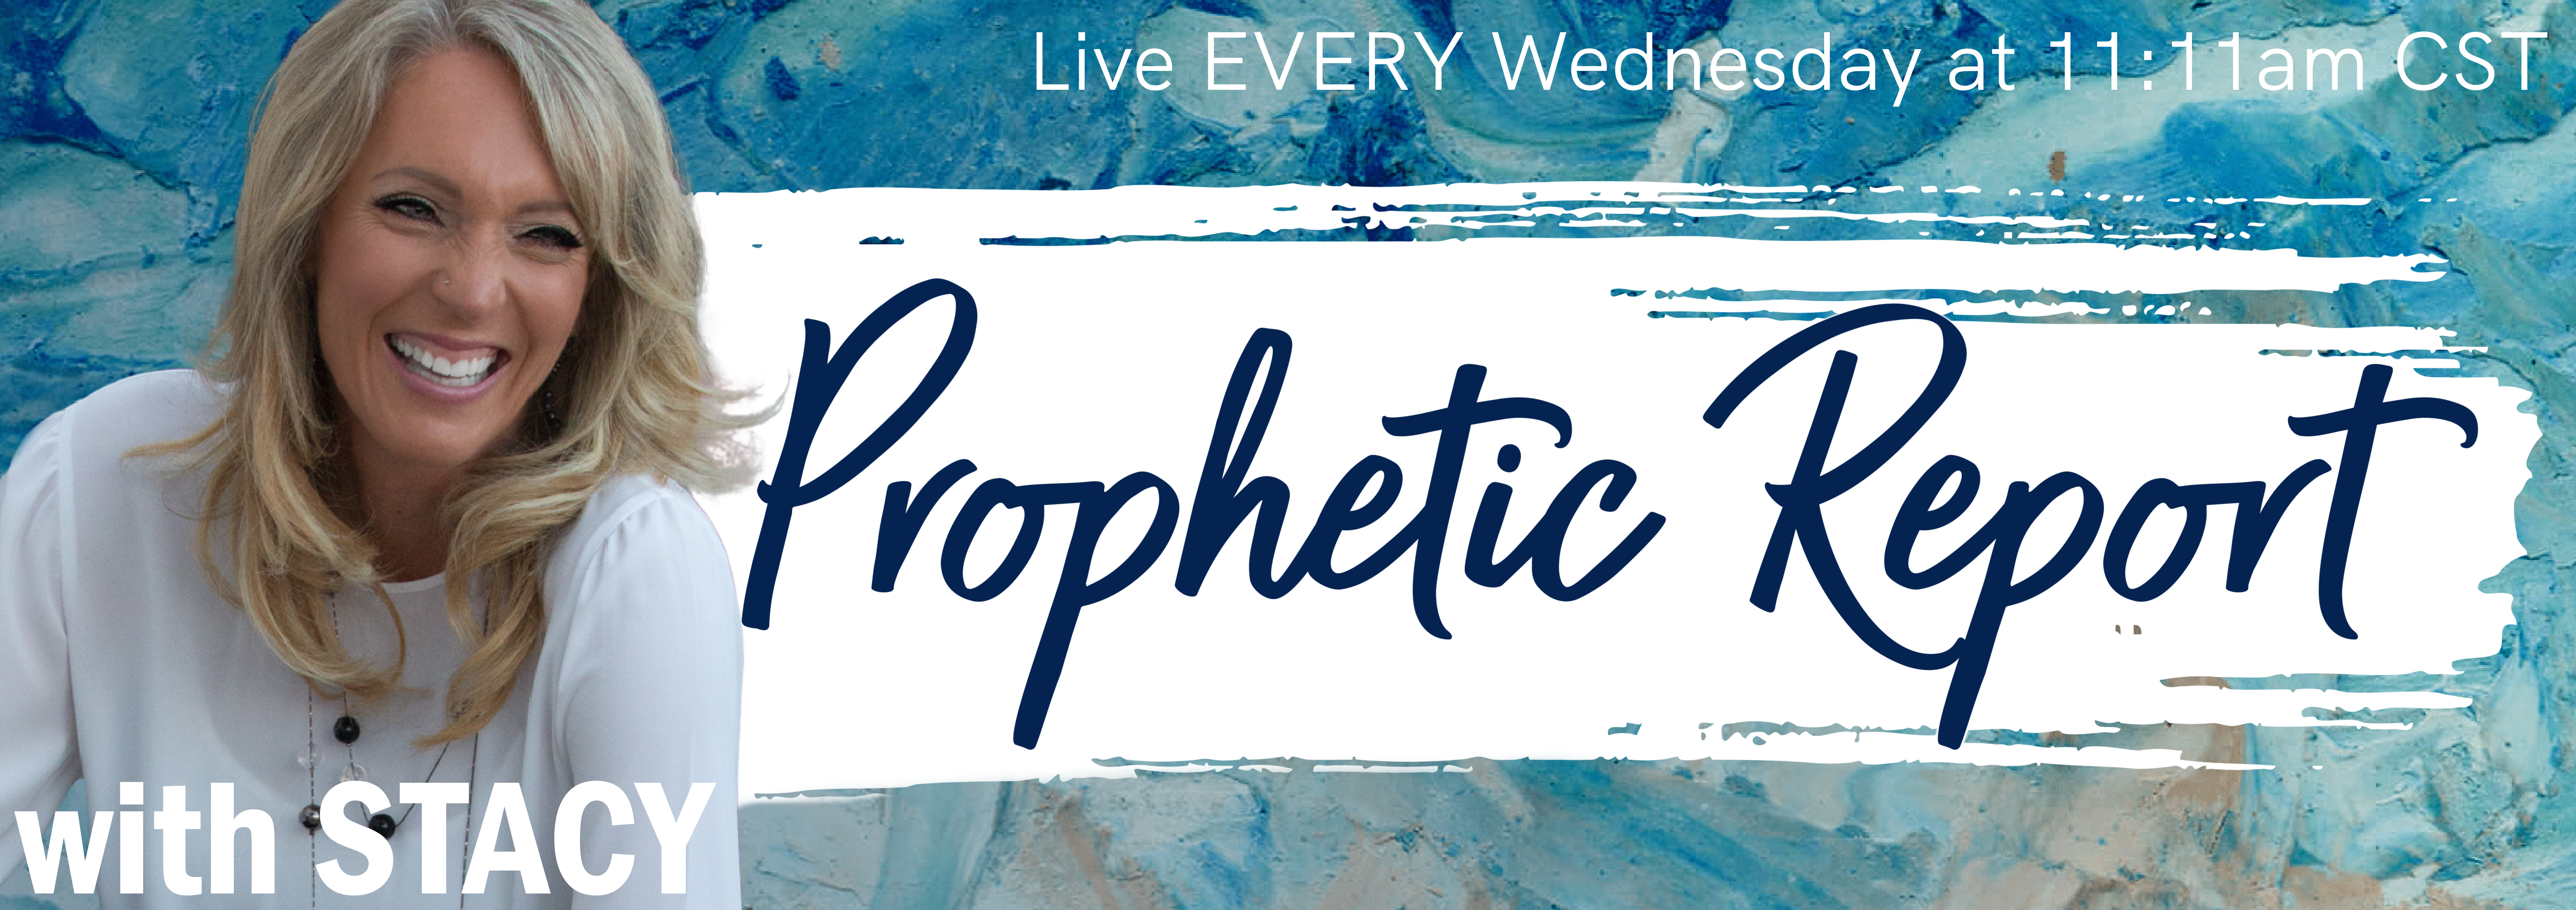 Prophetic Report Web Banner (1)